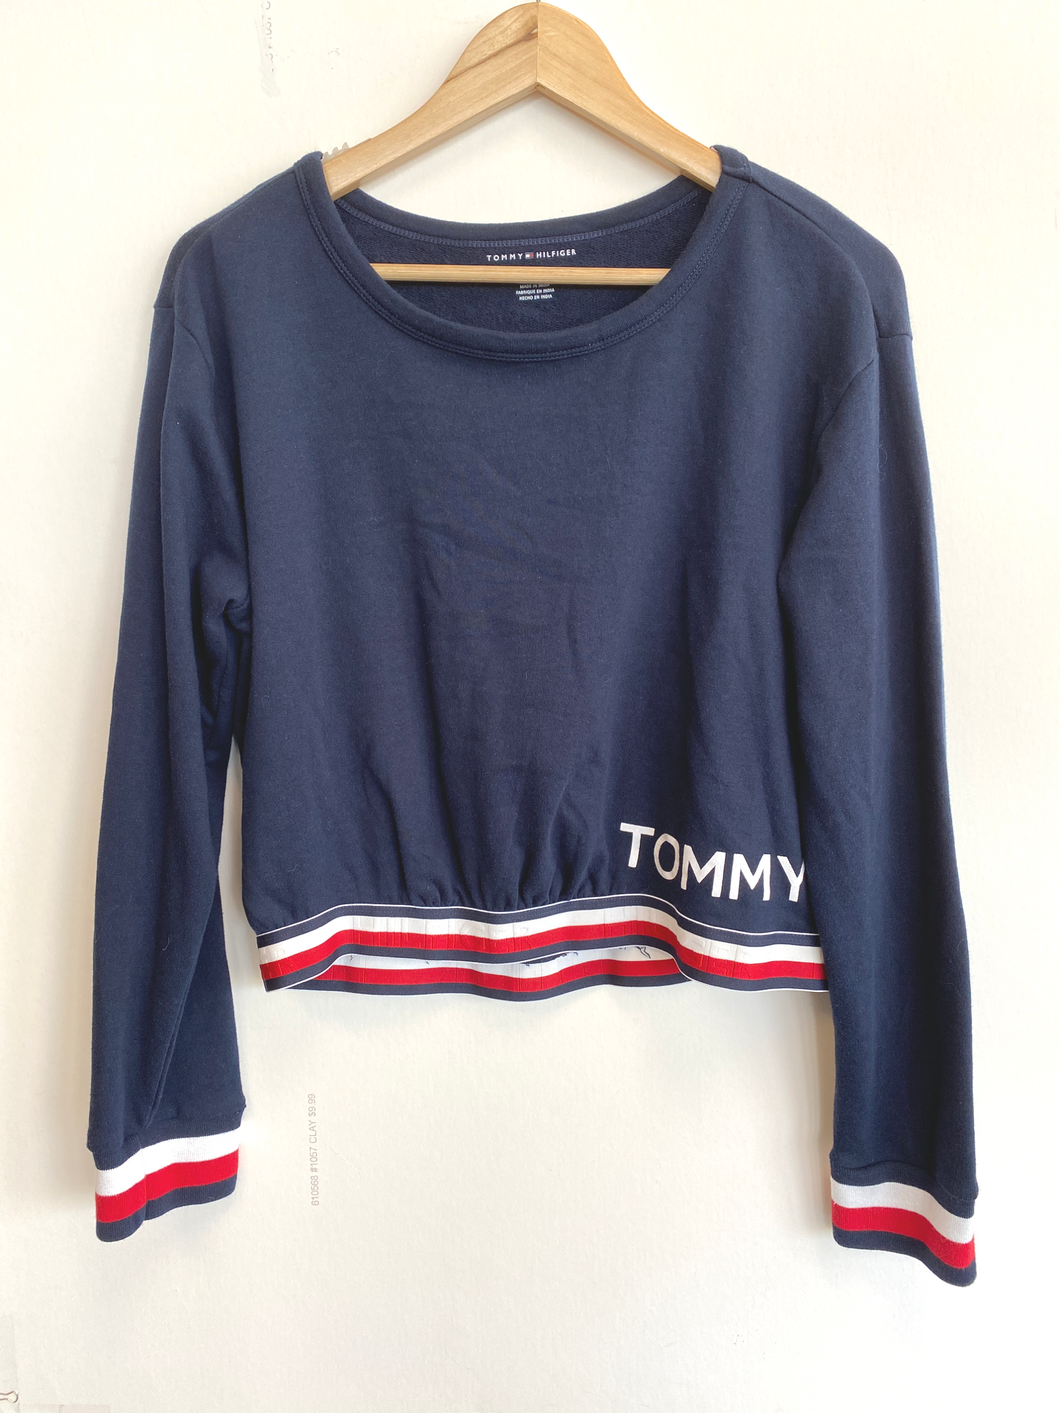 Tommy Hilfiger Sweatshirt Size Extra Large